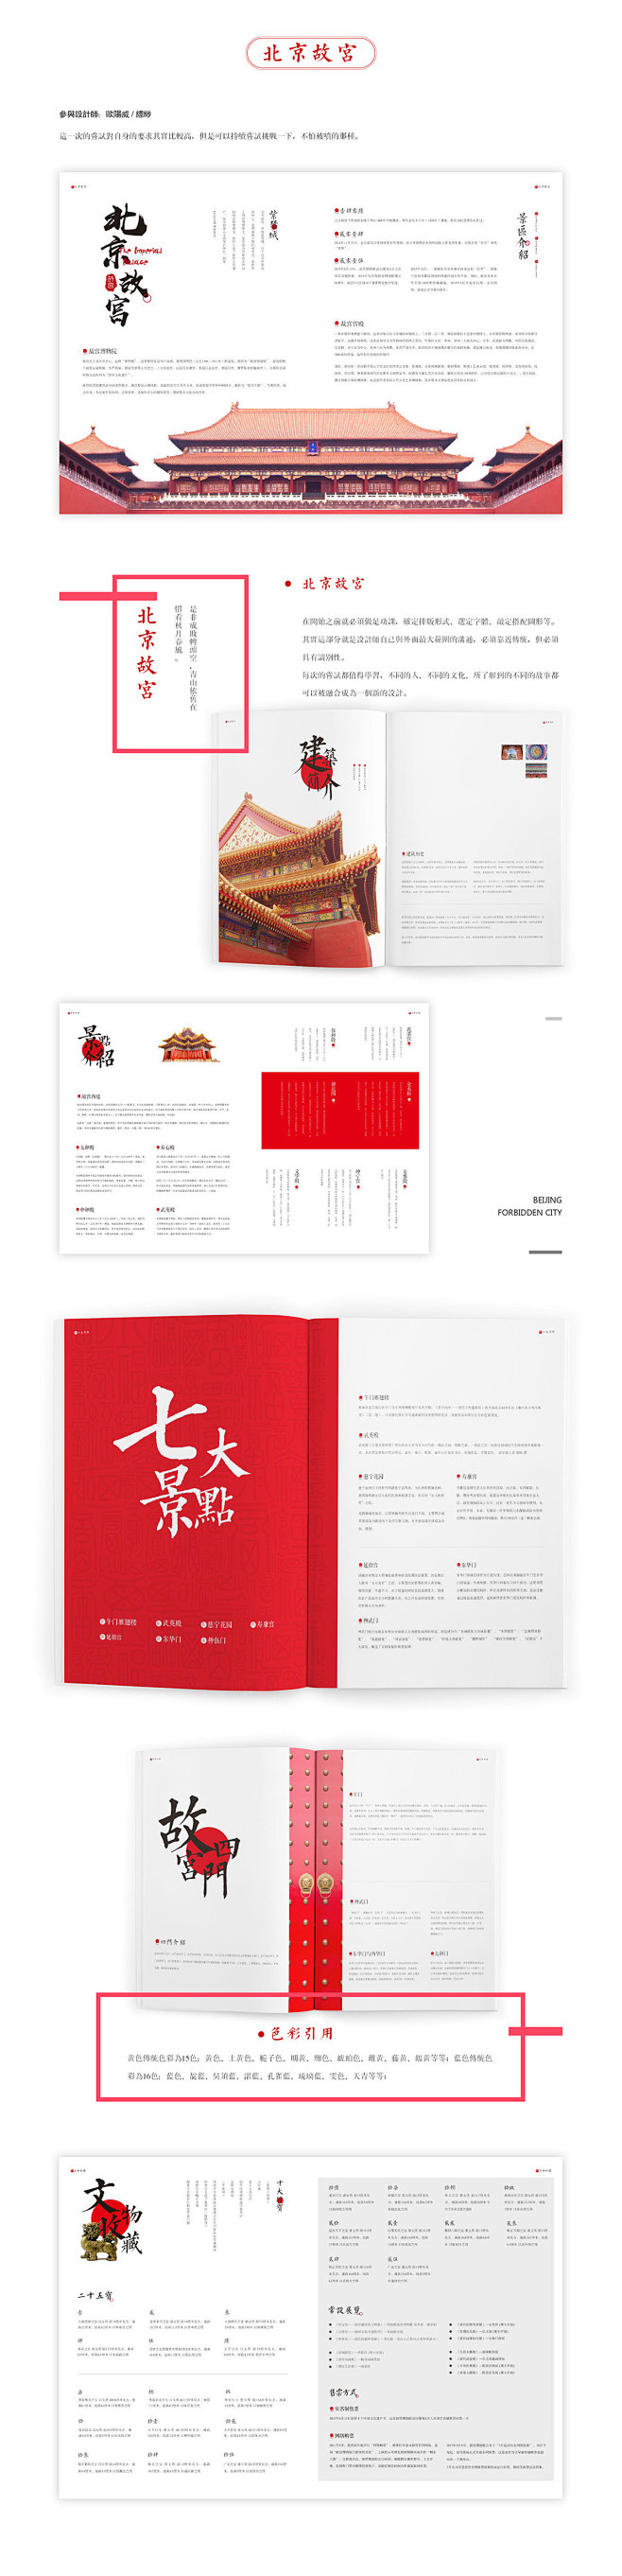 故宫画册设计提案｜8个稿件展示 : 中国...